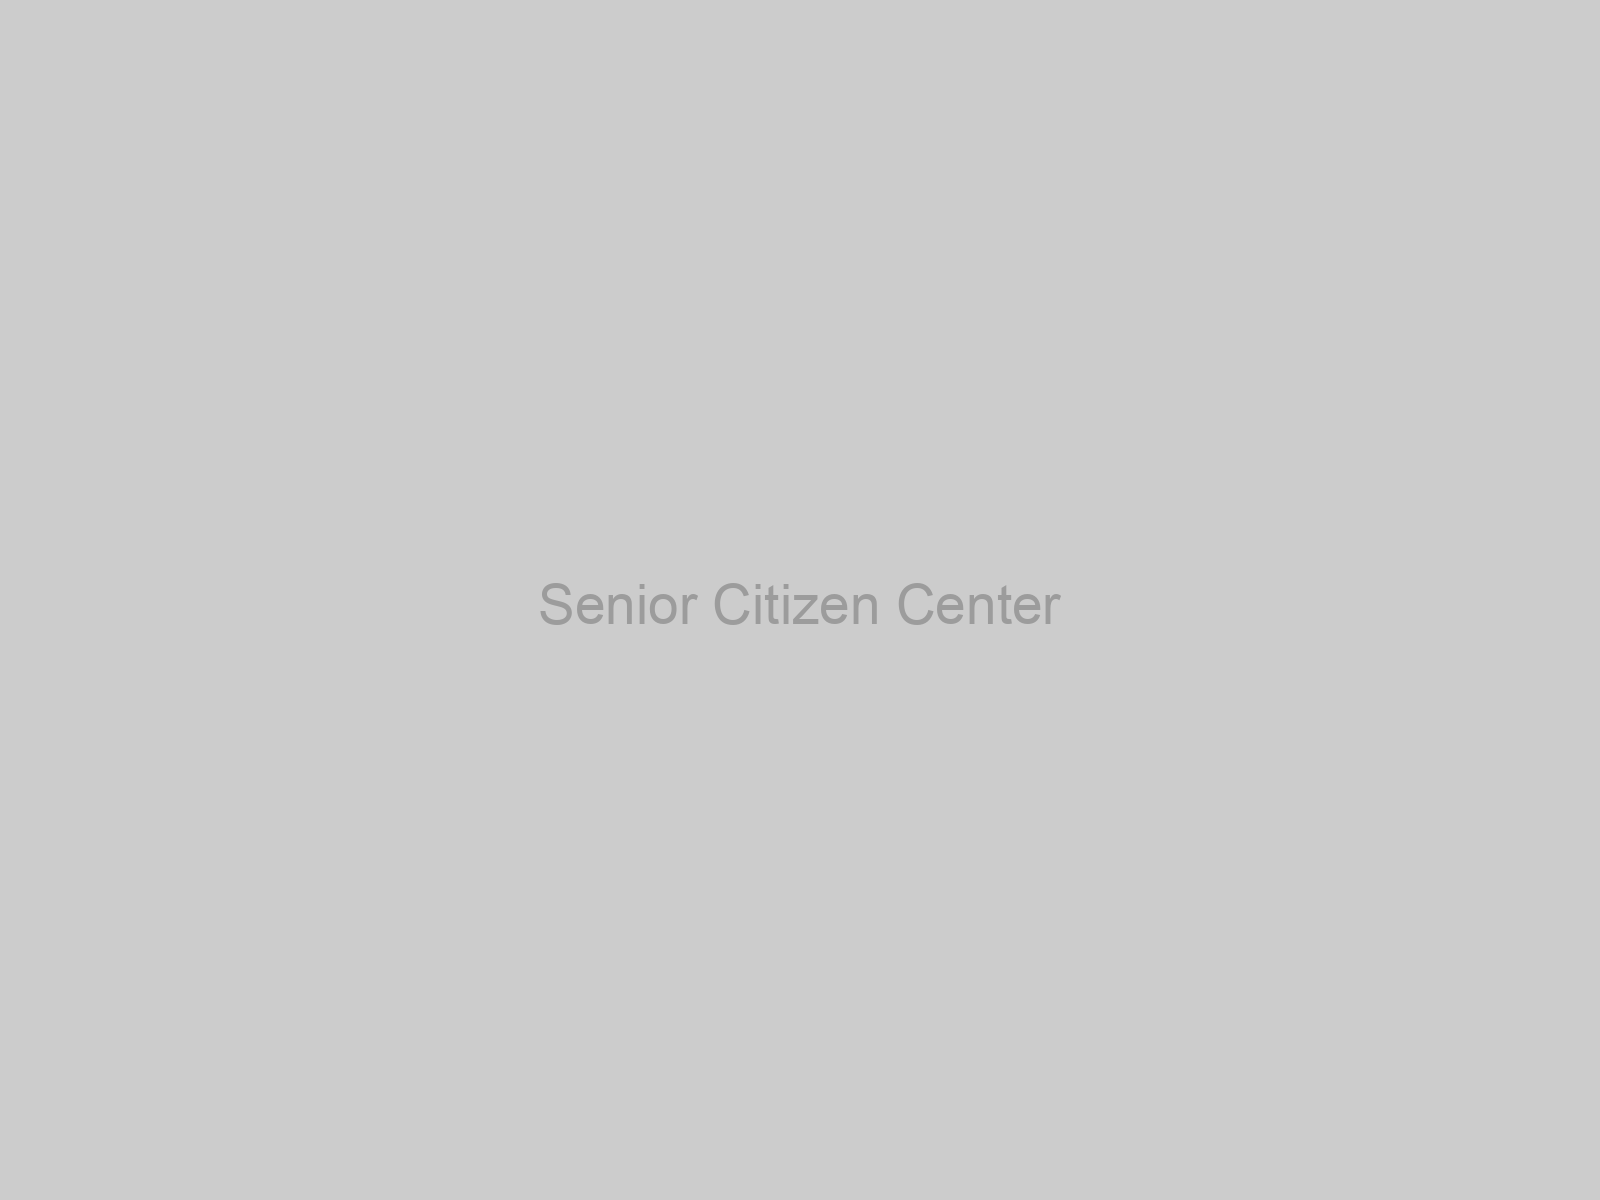 Senior Citizen Center